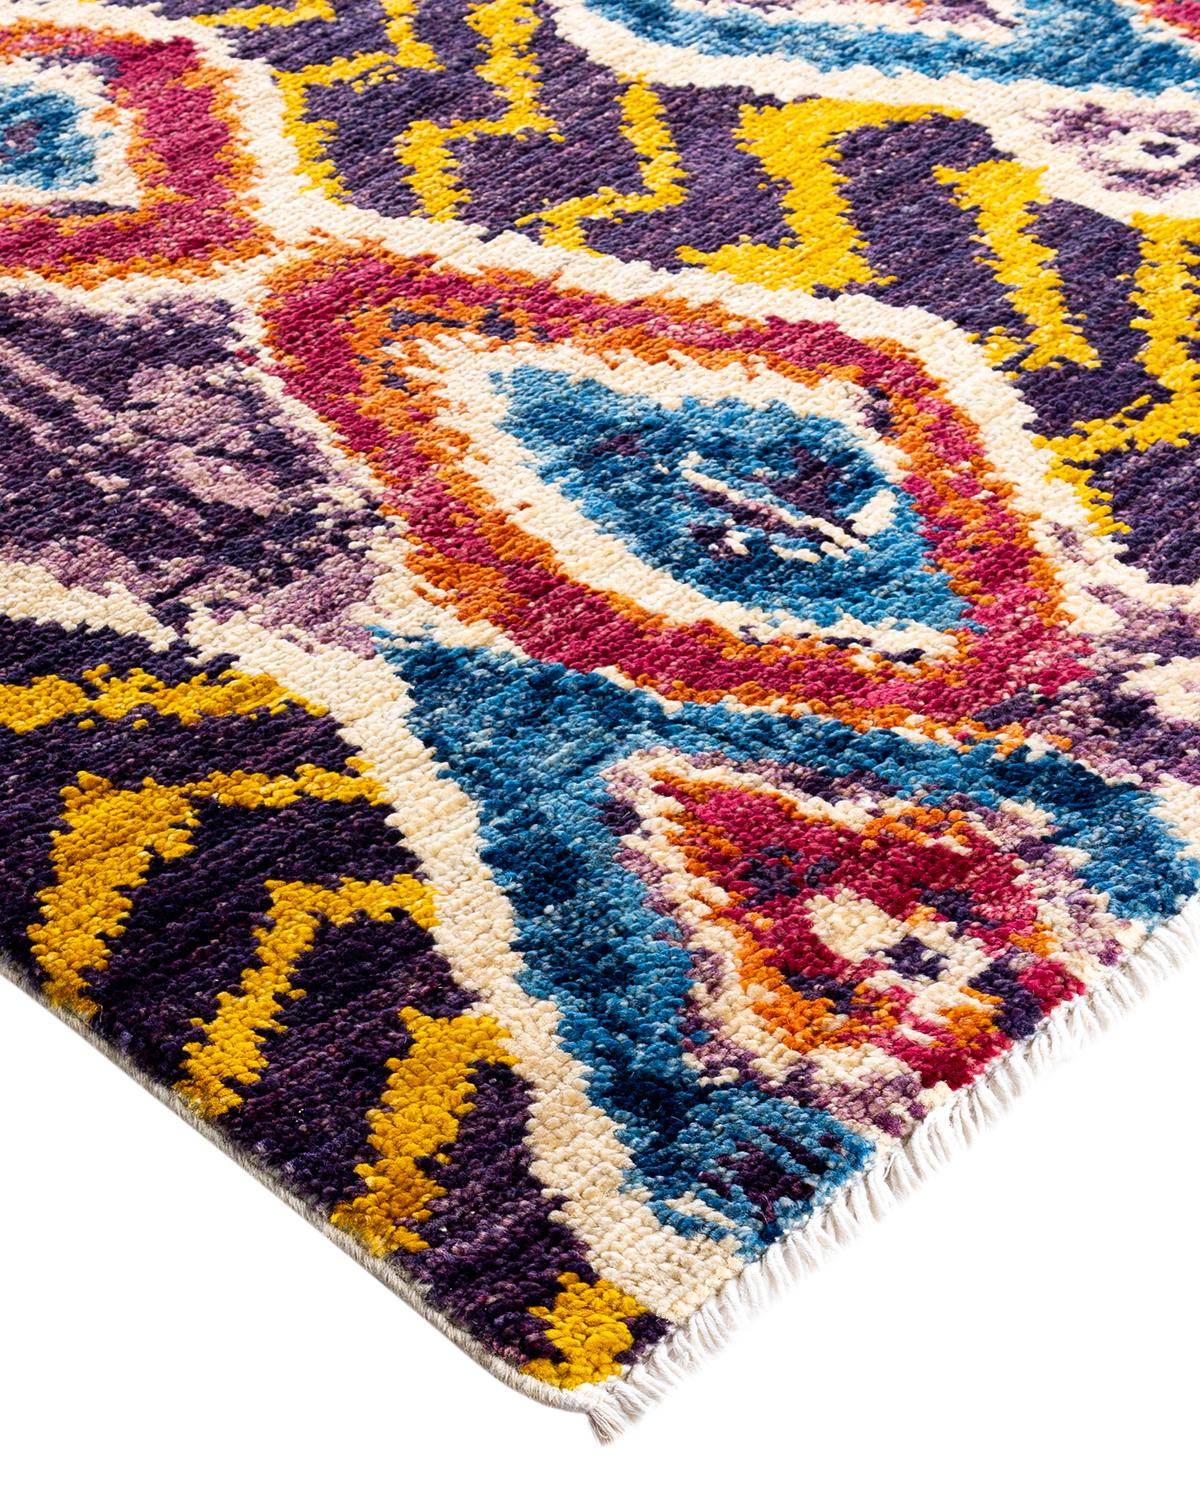 Frisch, temperamentvoll und vor allem luxuriös können die Teppiche der Modern Collection einen traditionellen Raum ebenso beleben wie einen zeitgenössischen Raum. Das opulente Muster dieses Teppichs ist von der reichen Tradition türkischer